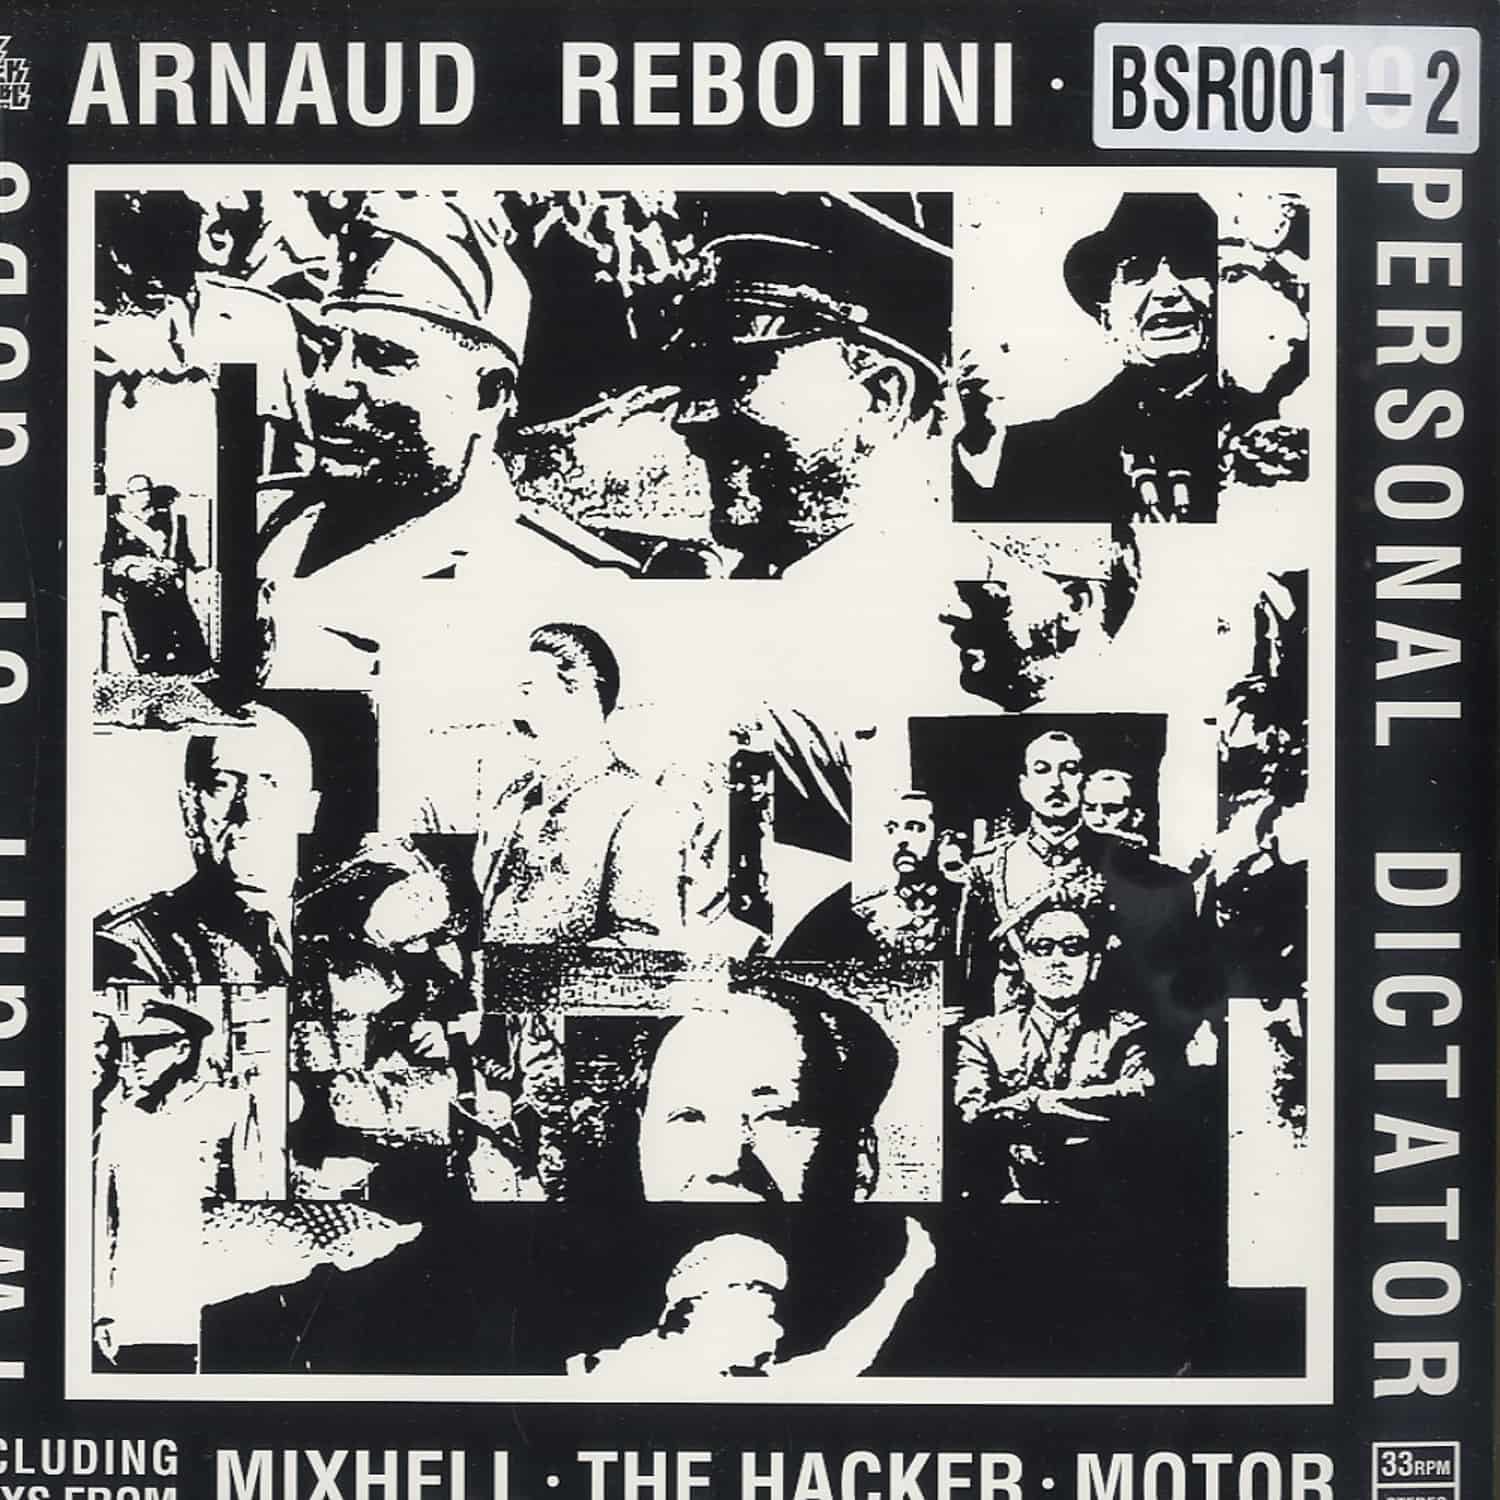 Arnaud Rebotini - PERSONAL DICTATOR 